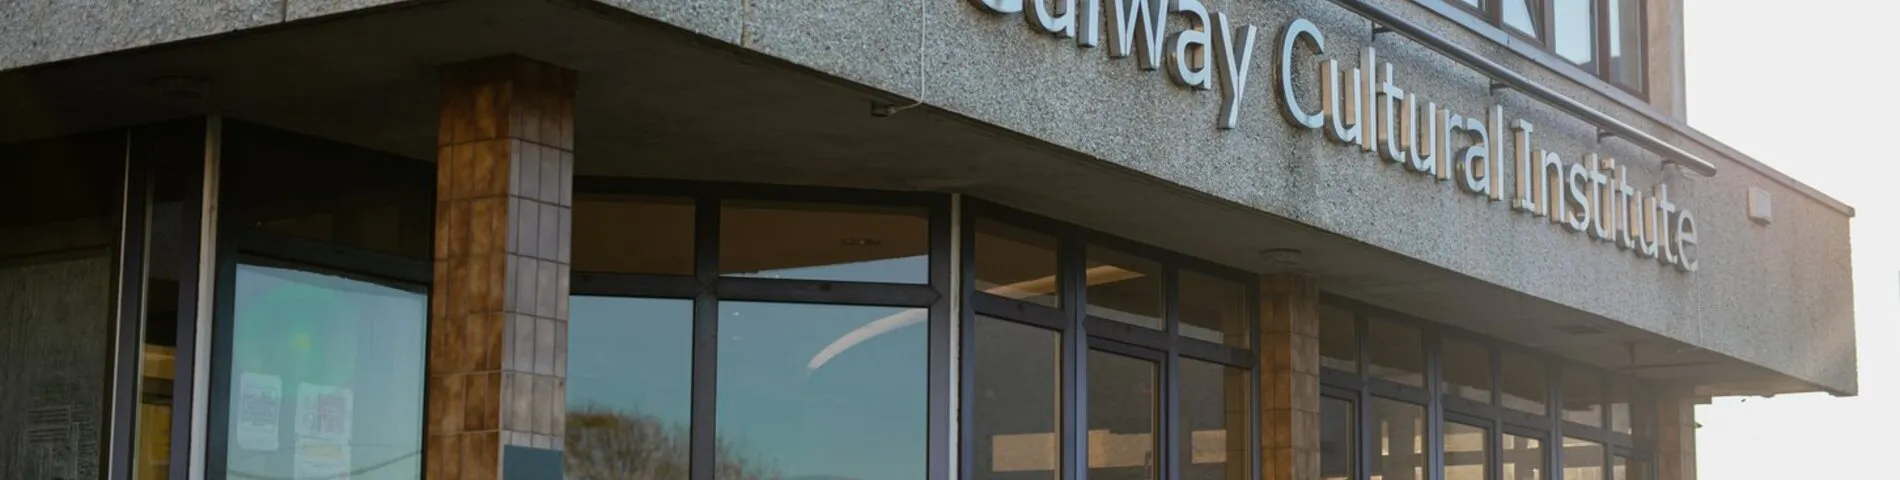 Galway Cultural Institute kép 1